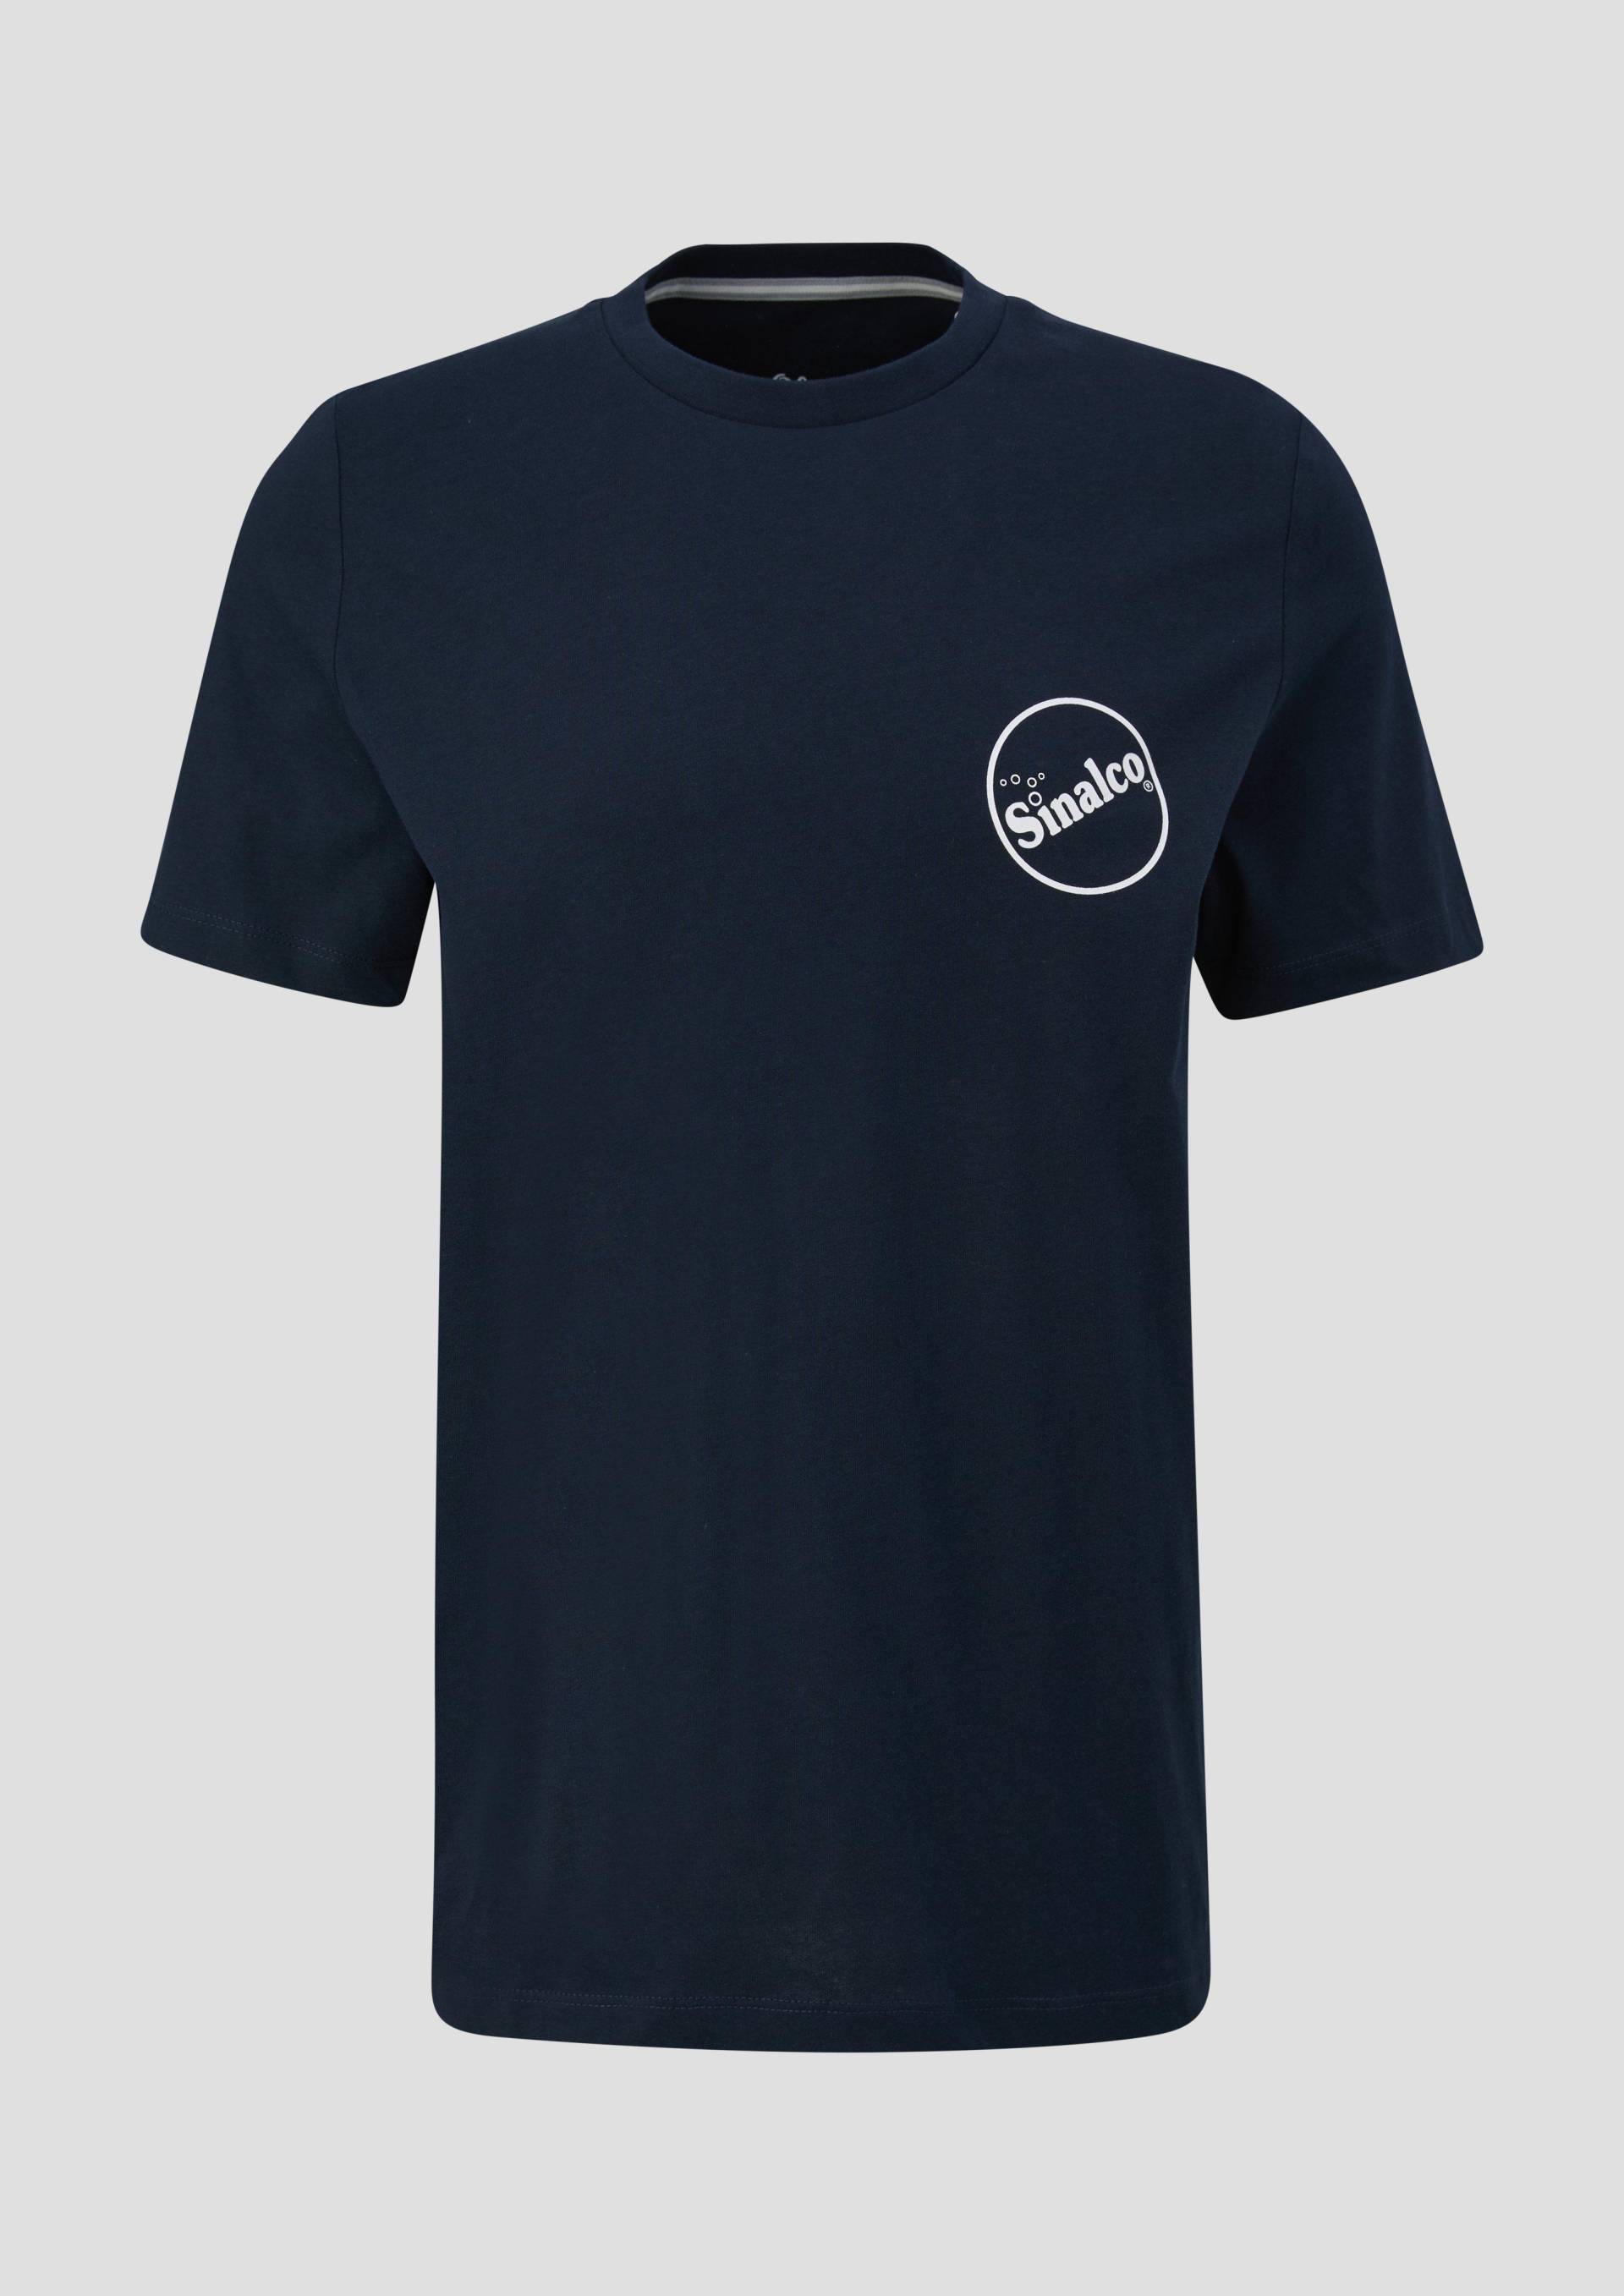 s.Oliver - Baumwoll-T-Shirt mit Crew Neck und Sinalco®-Print, Herren, blau von s.Oliver